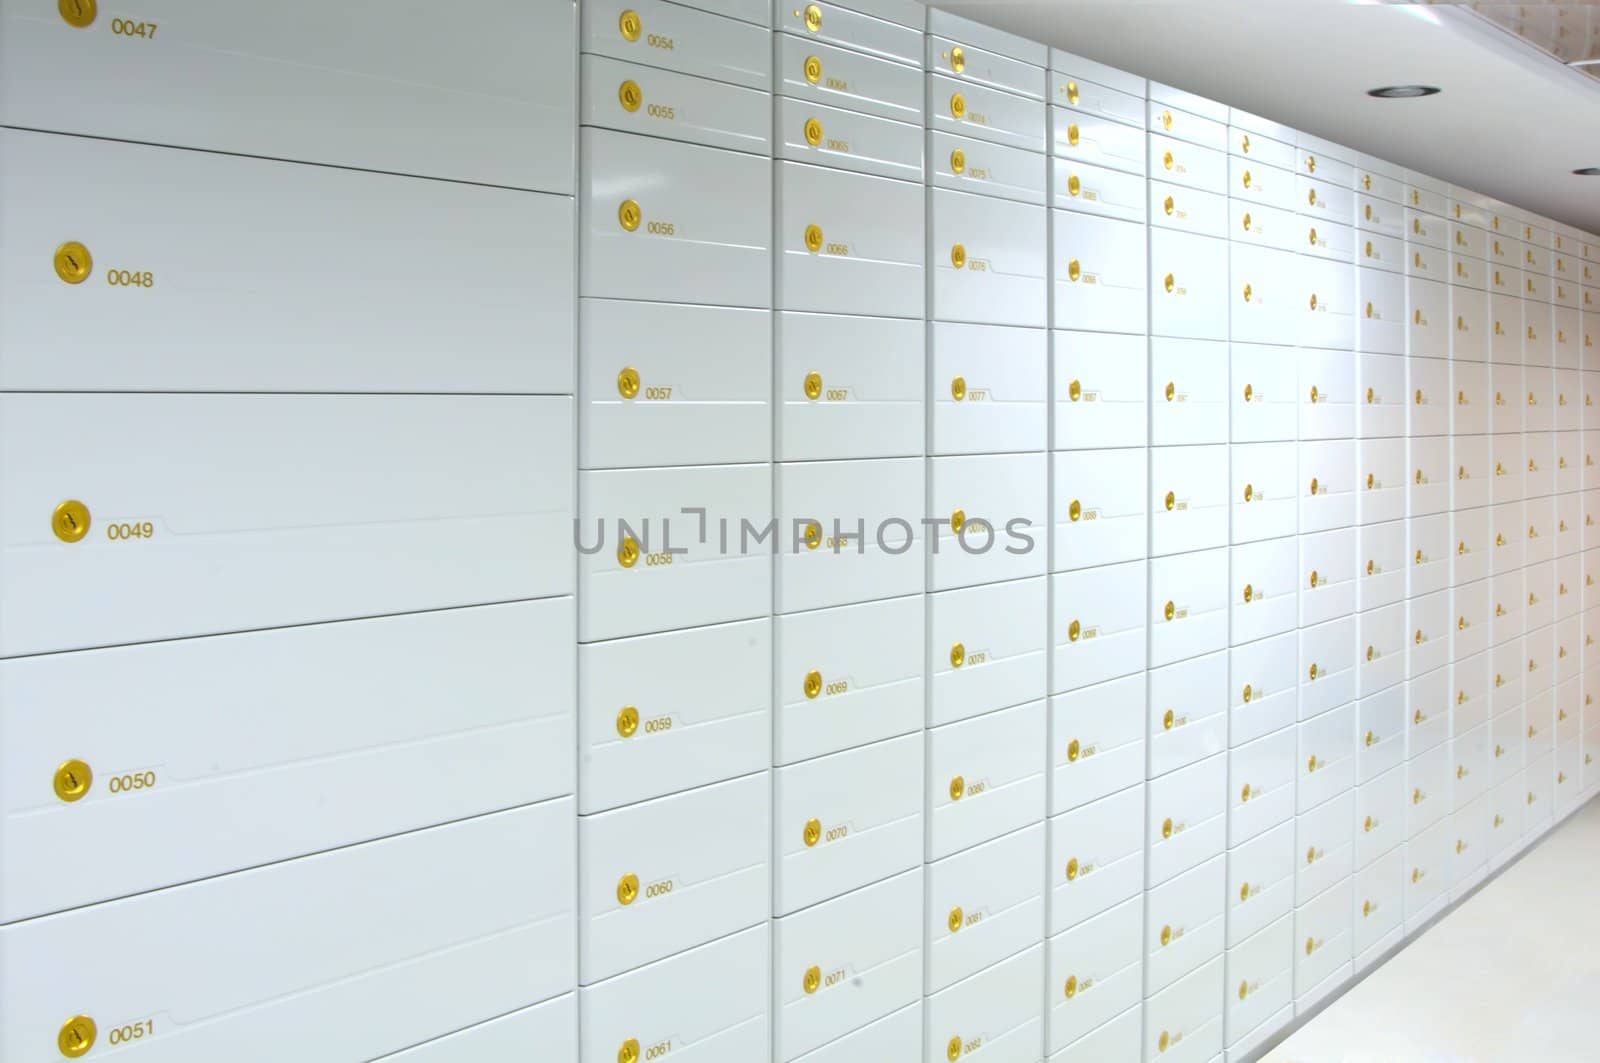 Vault of safe deposit boxes